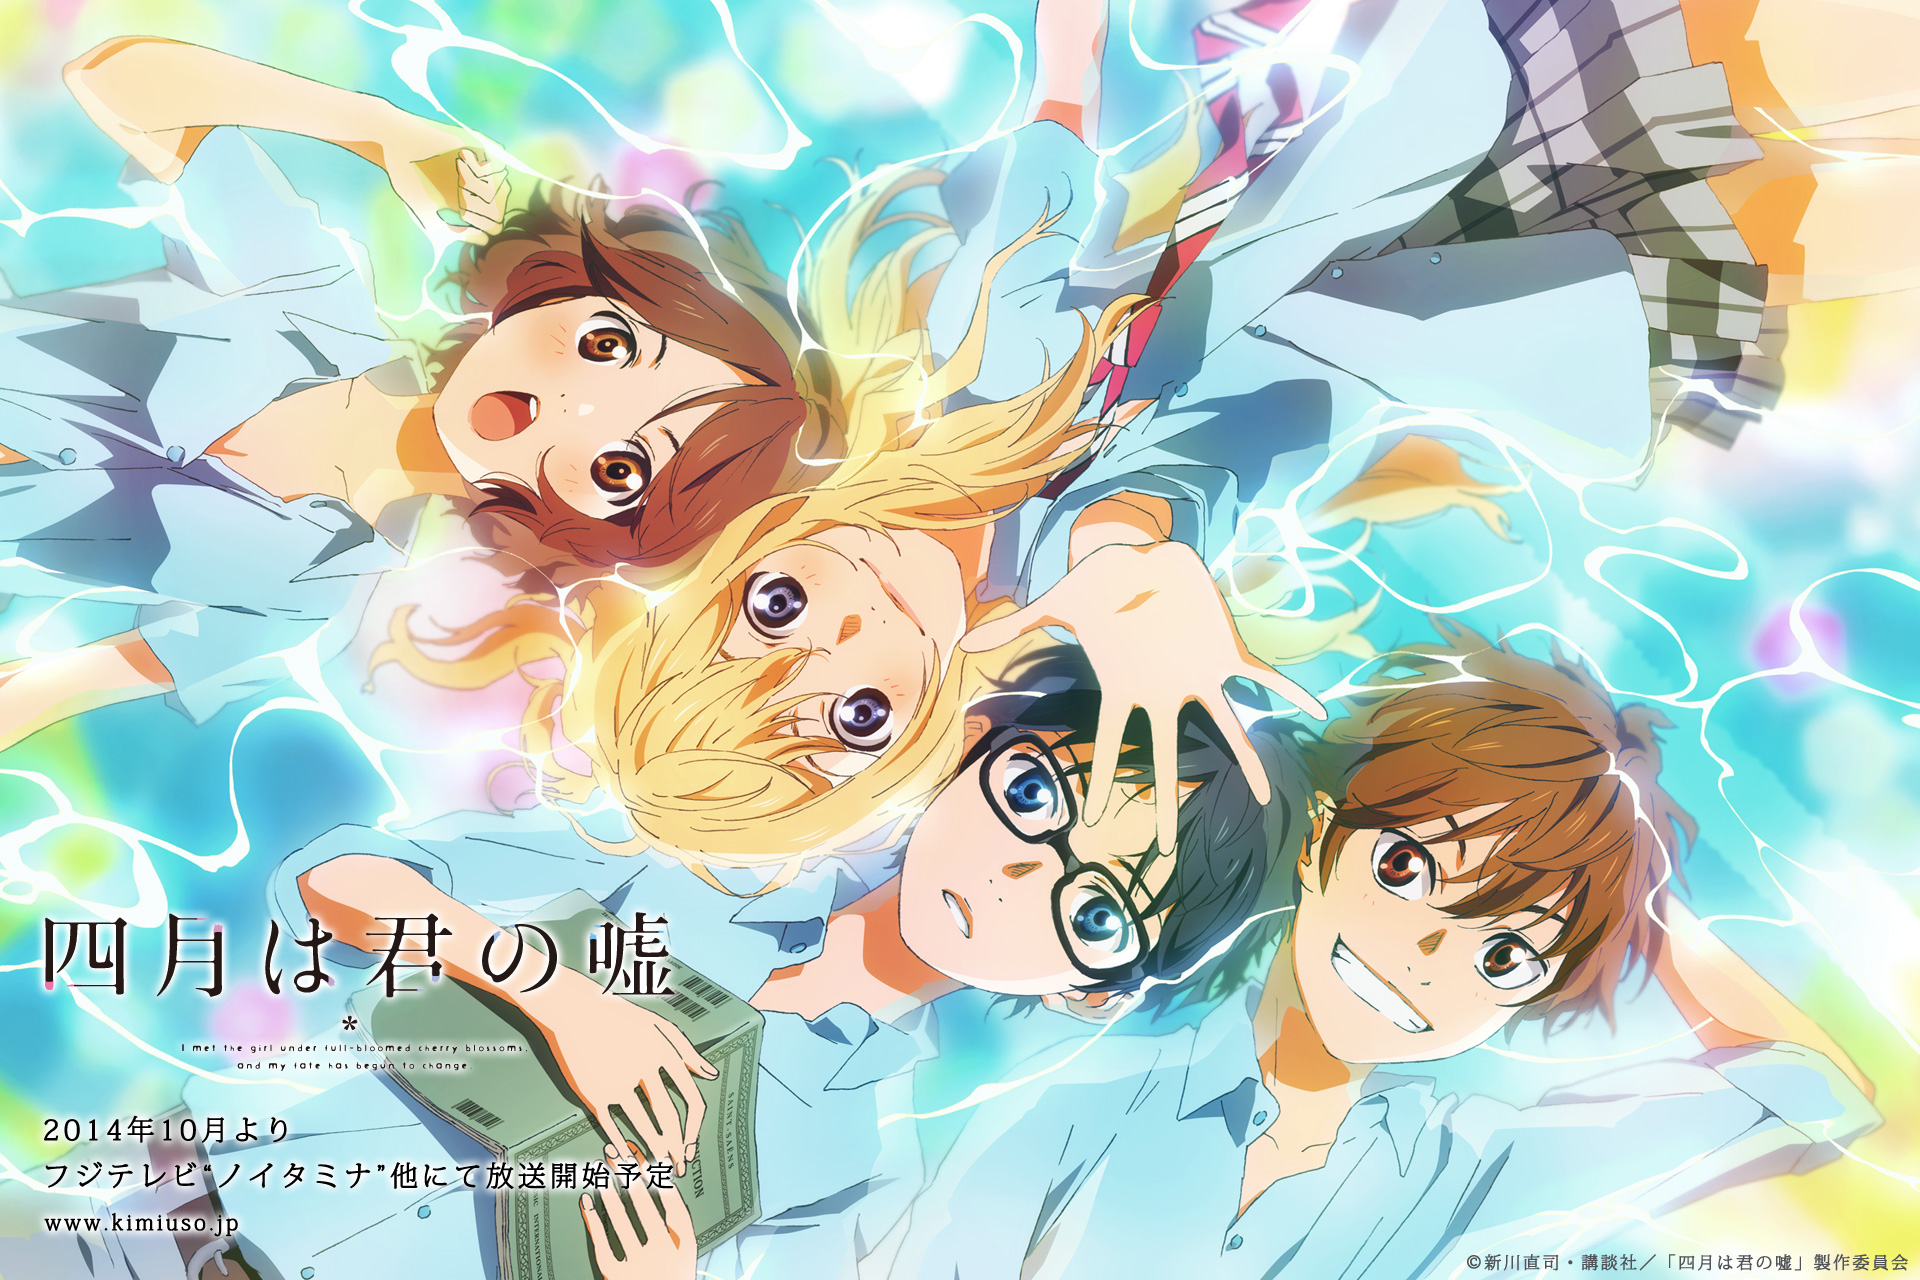 TV Anime Shigatsu wa Kimi no Uso 2nd Ending Theme - Orange - Seven Oops